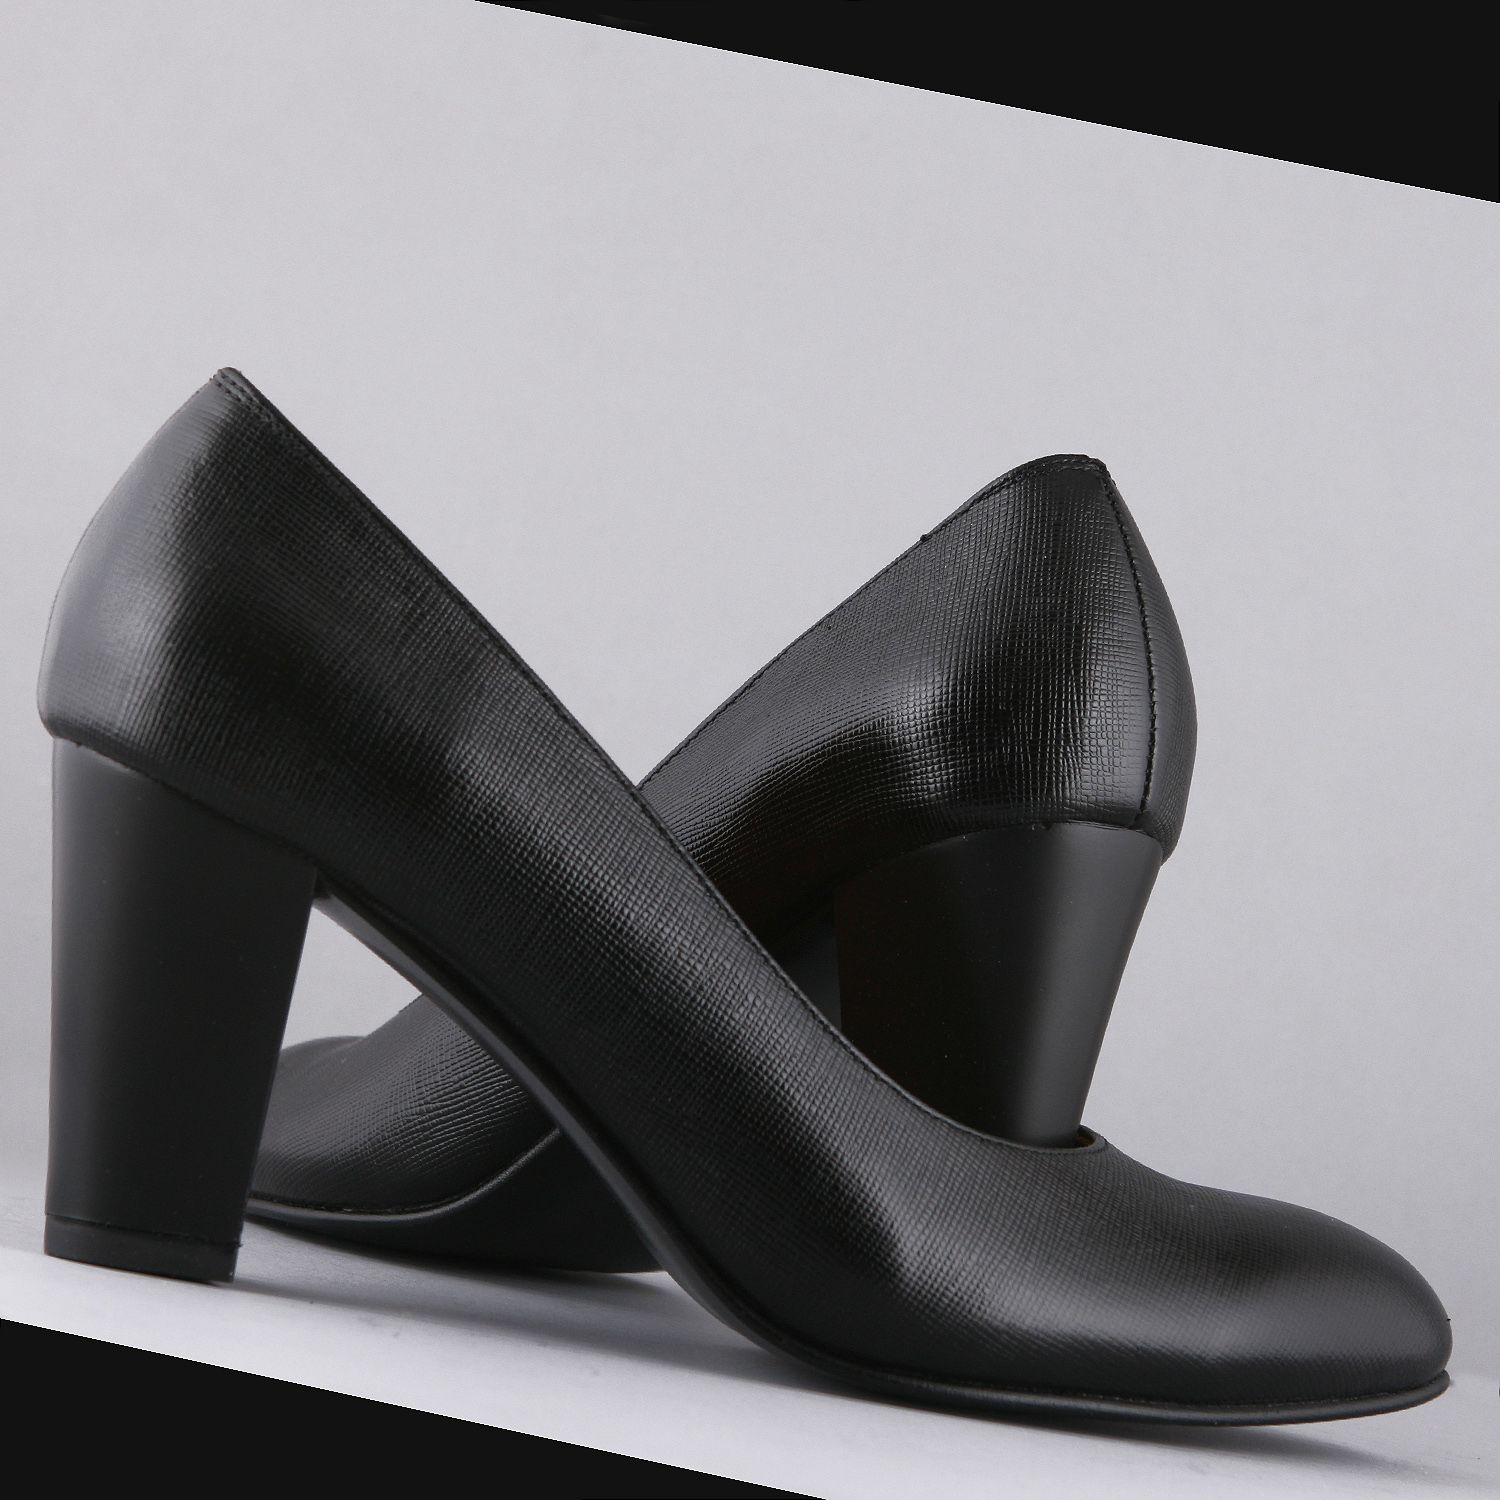 ست کیف و کفش زنانه چرم یلسان مدل مارال کد ANA-HRM-901-msk -  - 23